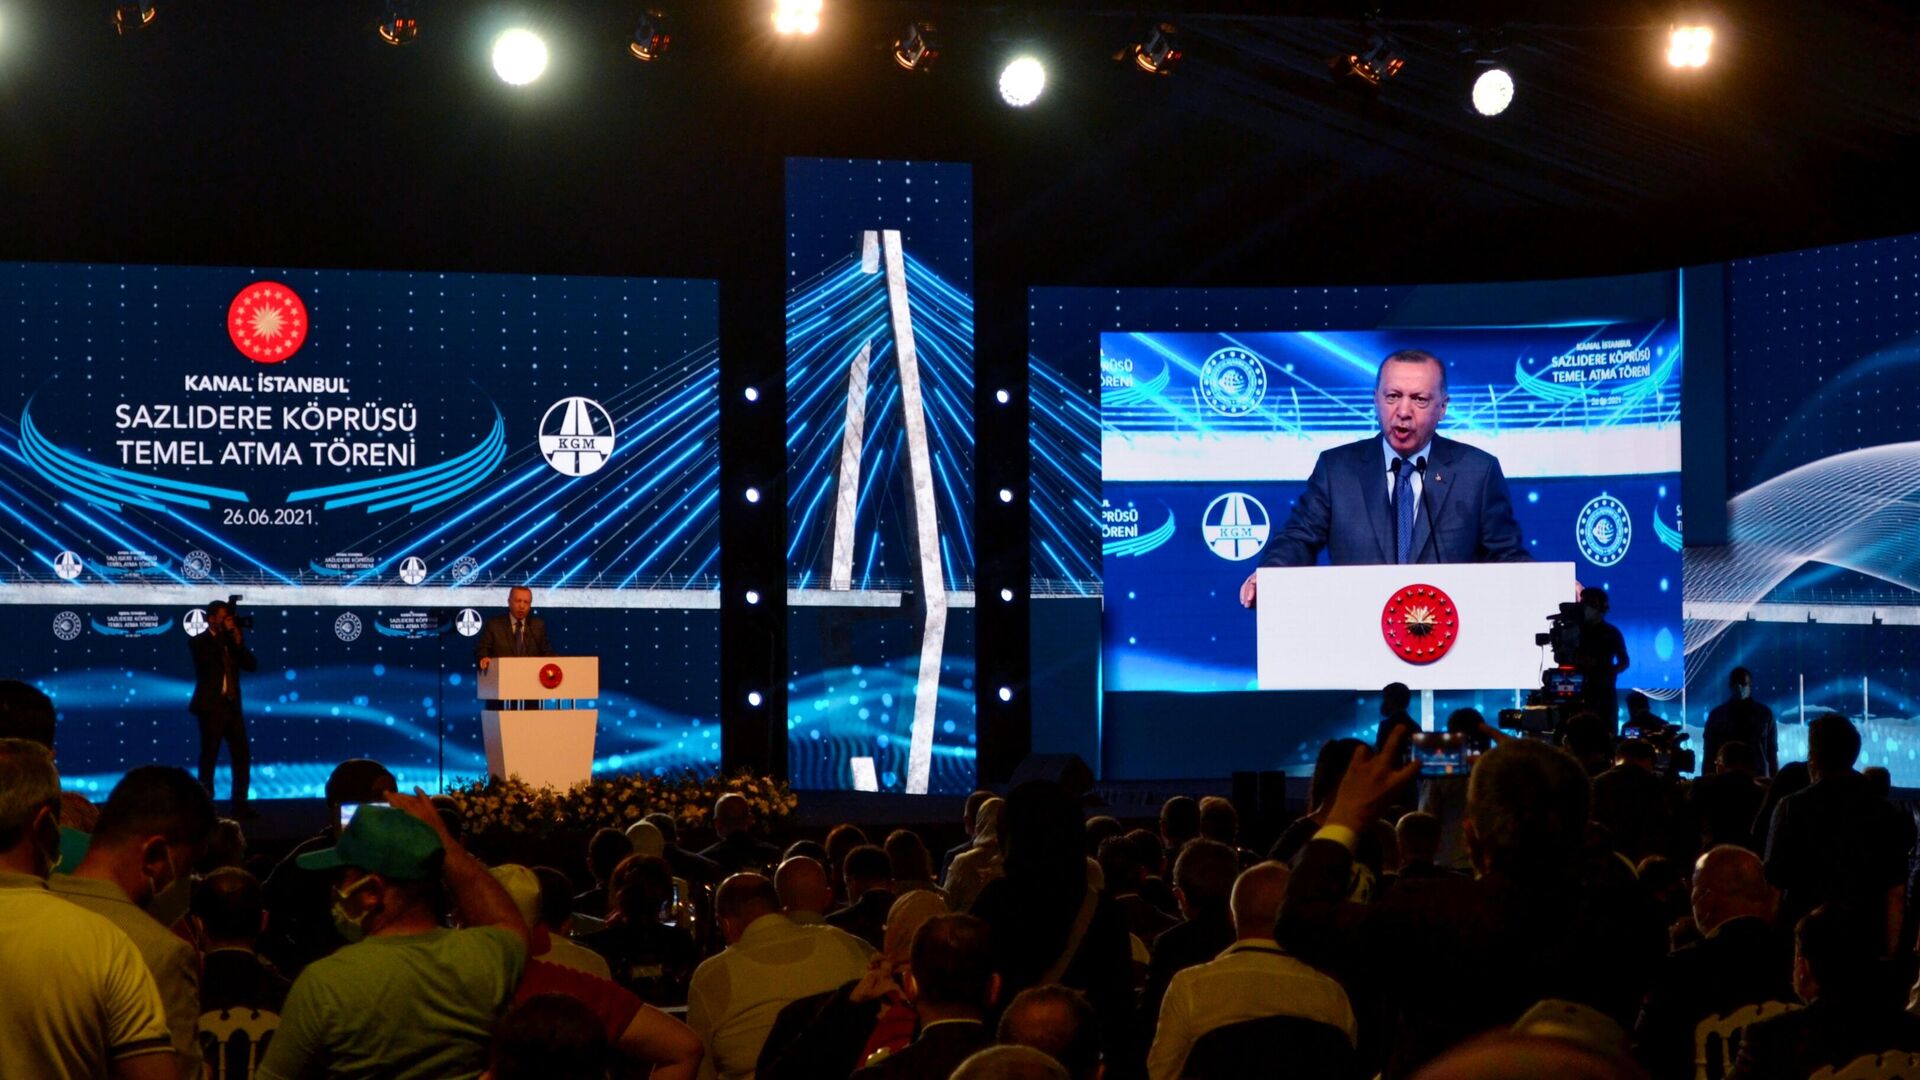 Президент Турции Реджеп Тайип Эрдоган выступает на церемонии начала строительства канала Стамбул - РИА Новости, 1920, 26.06.2021